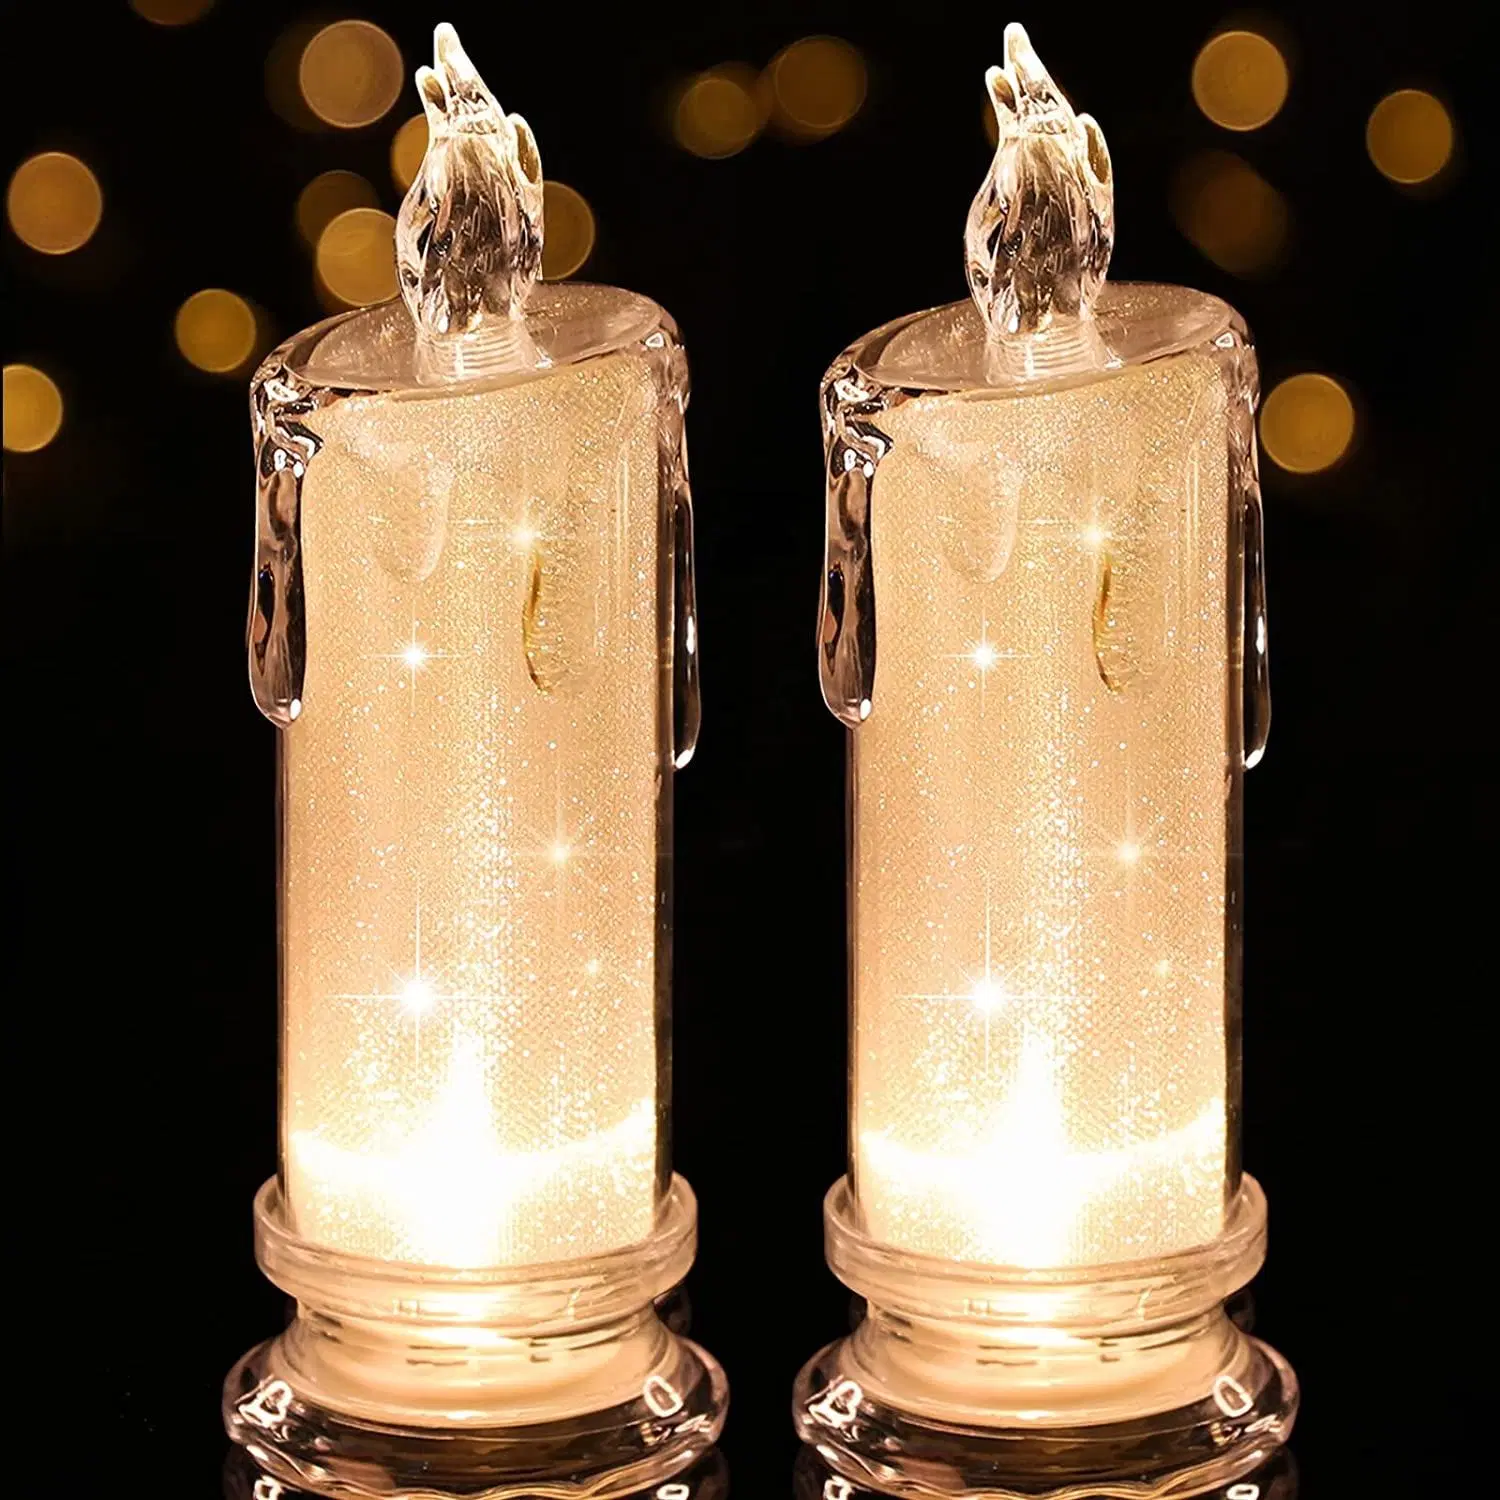 Bougies à LED sans flamme Bougies à LED vacillantes Bougies à piles pour fêtes, mariages et décorations de maison.